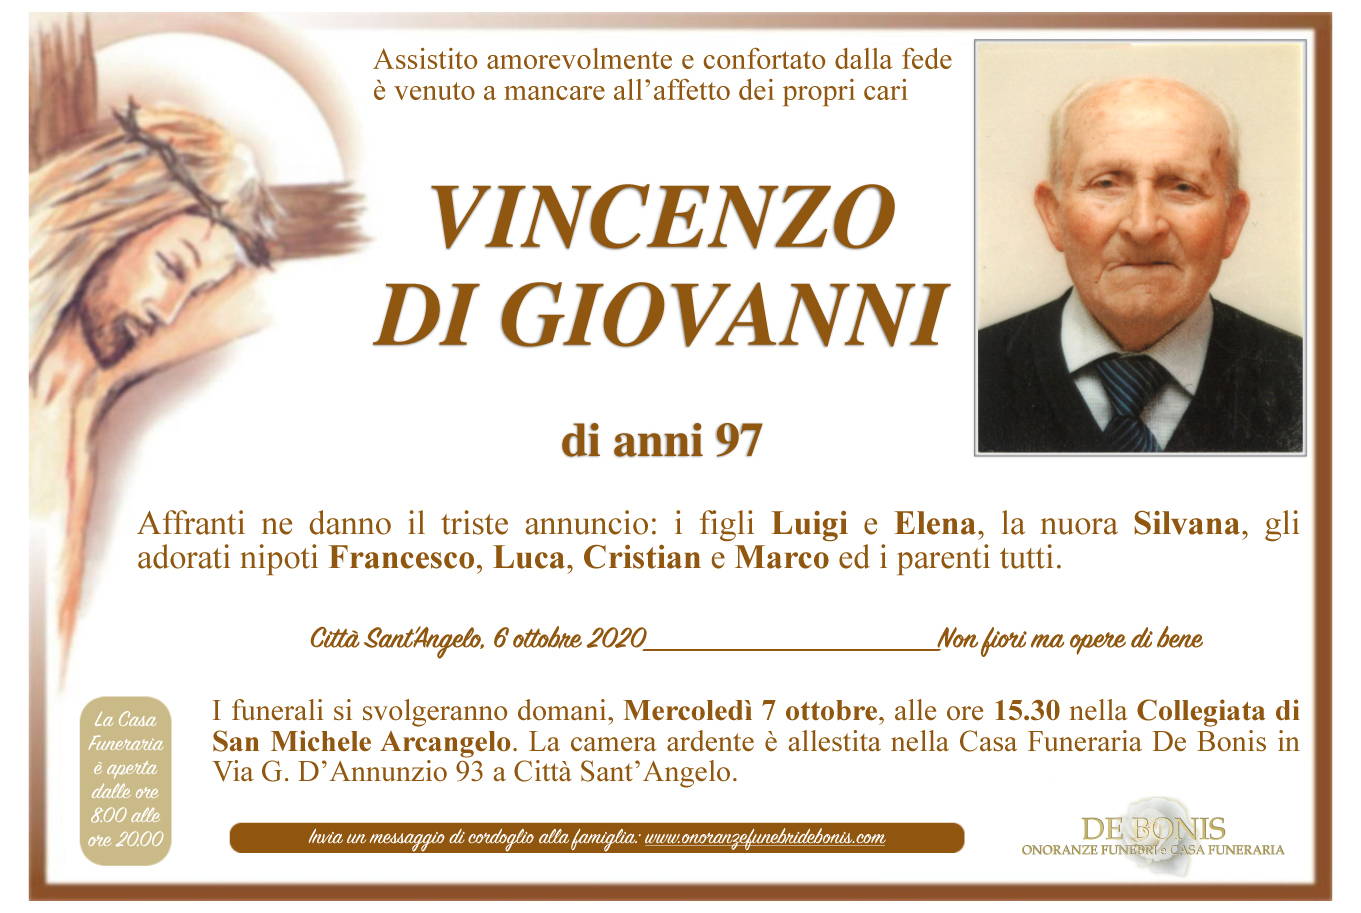 Vincenzo Di Giovanni